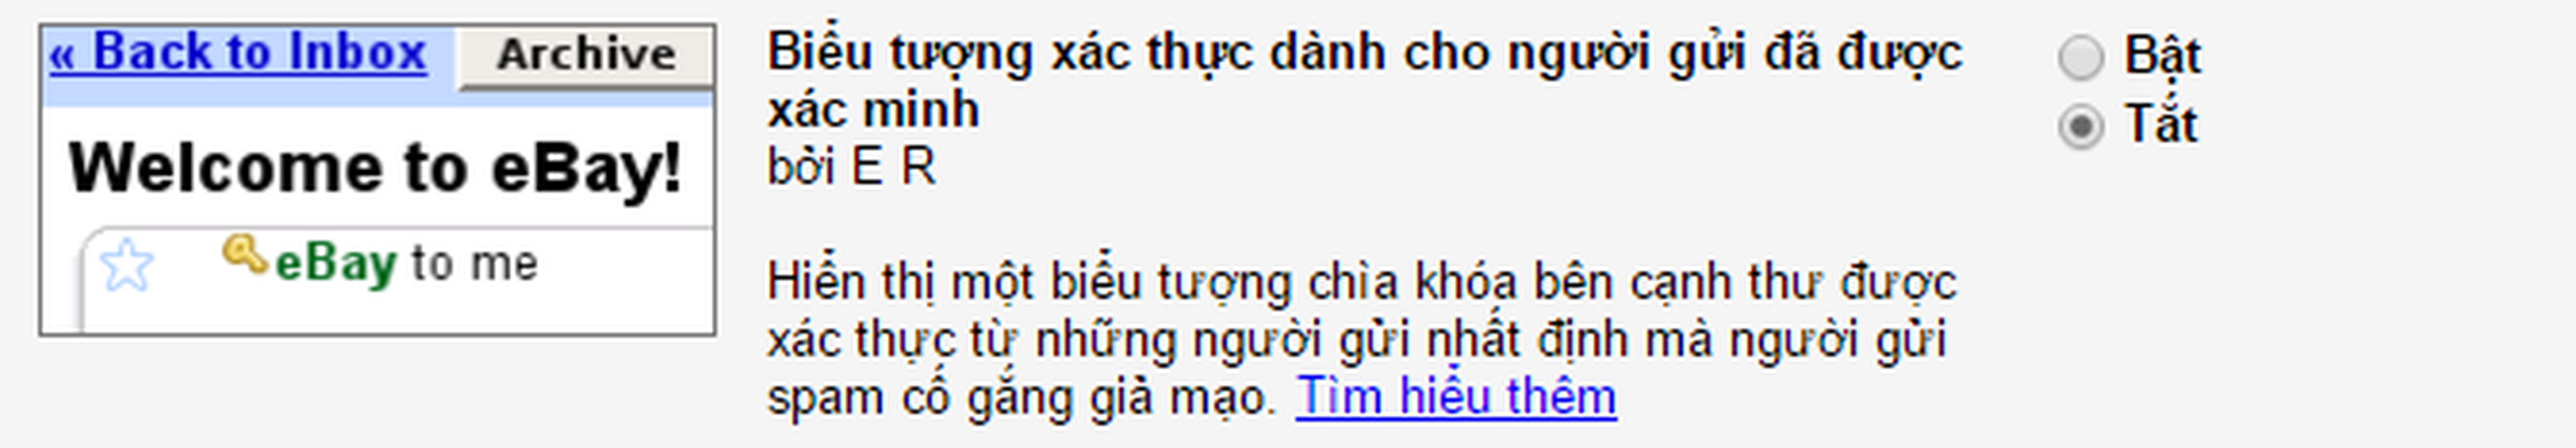 9 tinh nang tuyet voi cua Gmail co the ban chua biet den-Hinh-8